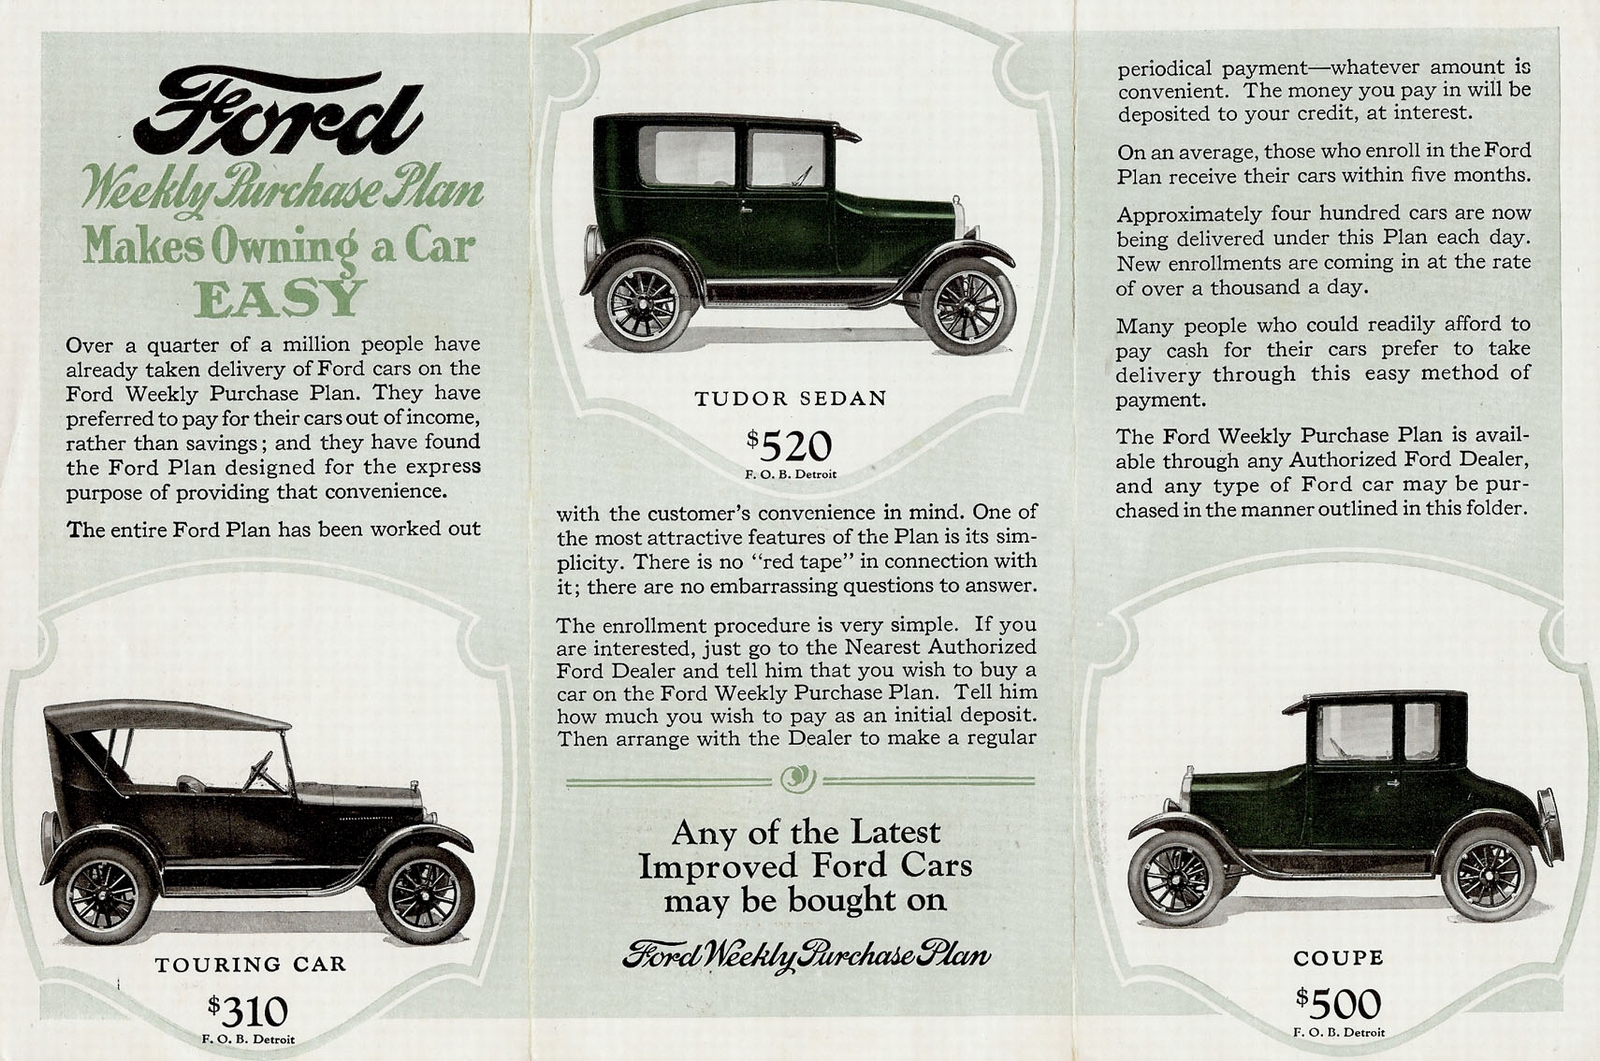 n_1925 Ford Weekly Purchase Plan-02.jpg